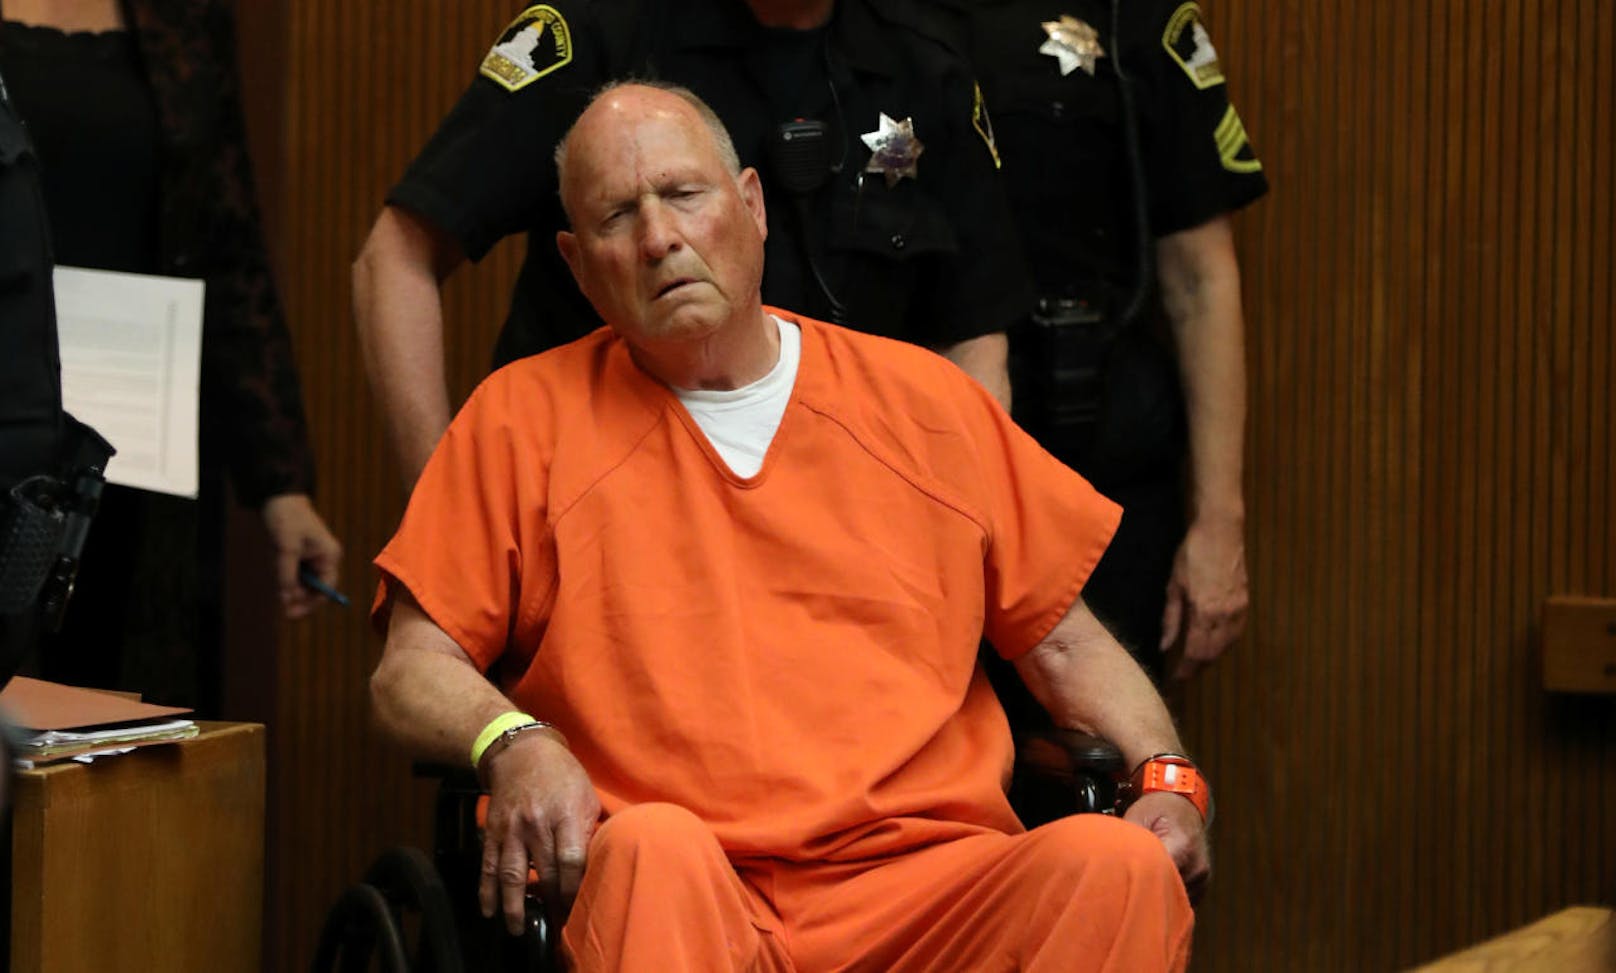 Der mutmaßliche US-Serienmörder Joseph James DeAngelo ist formell in zwei Fällen des Mordes beschuldigt worden.